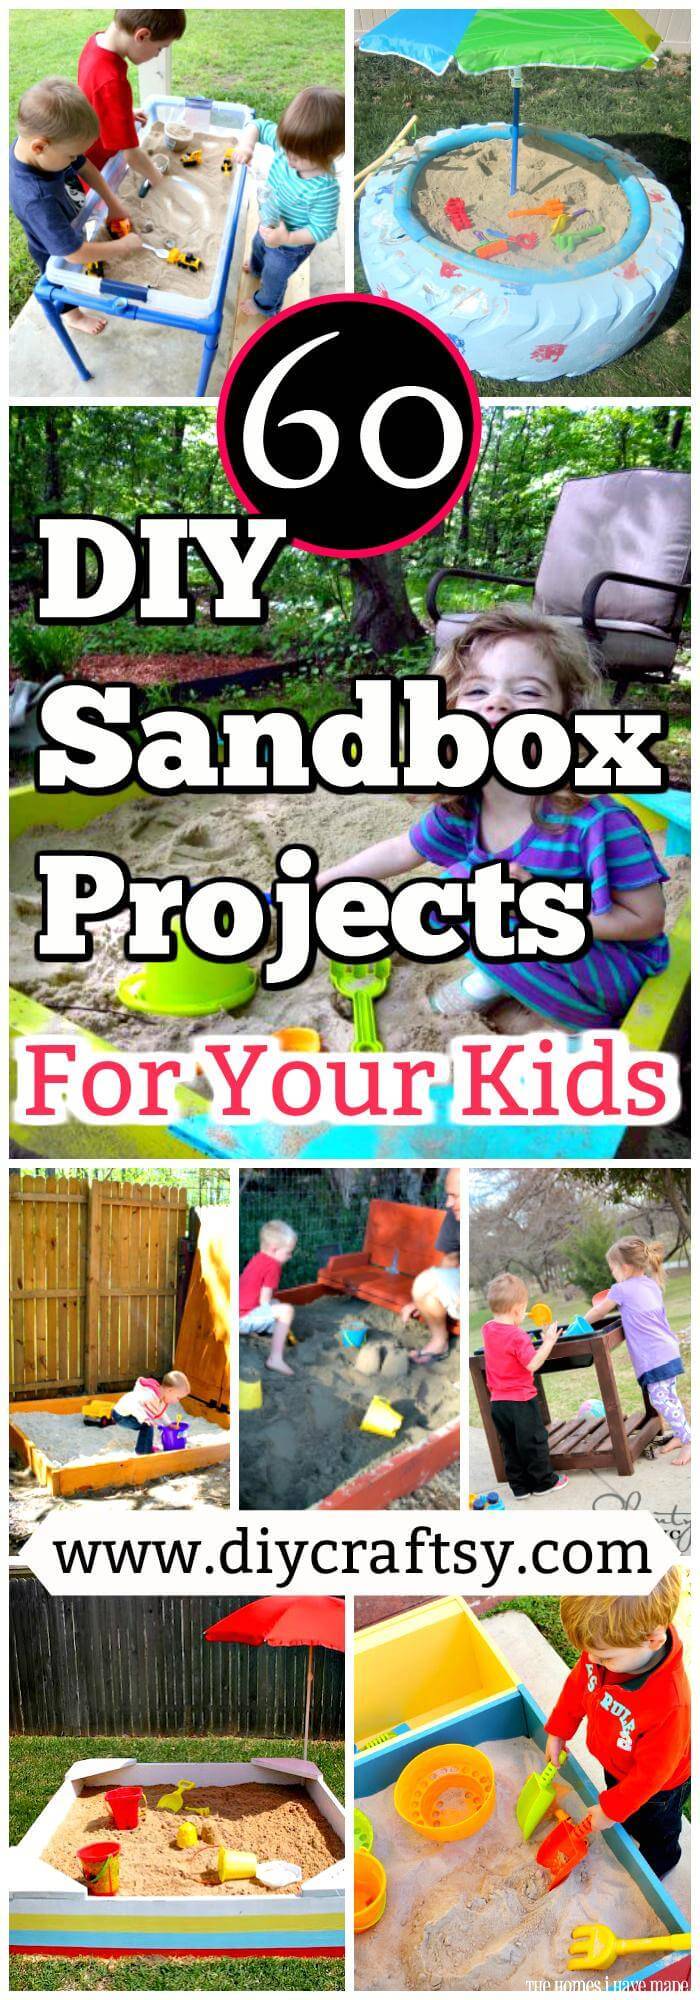 DIY Sandbox